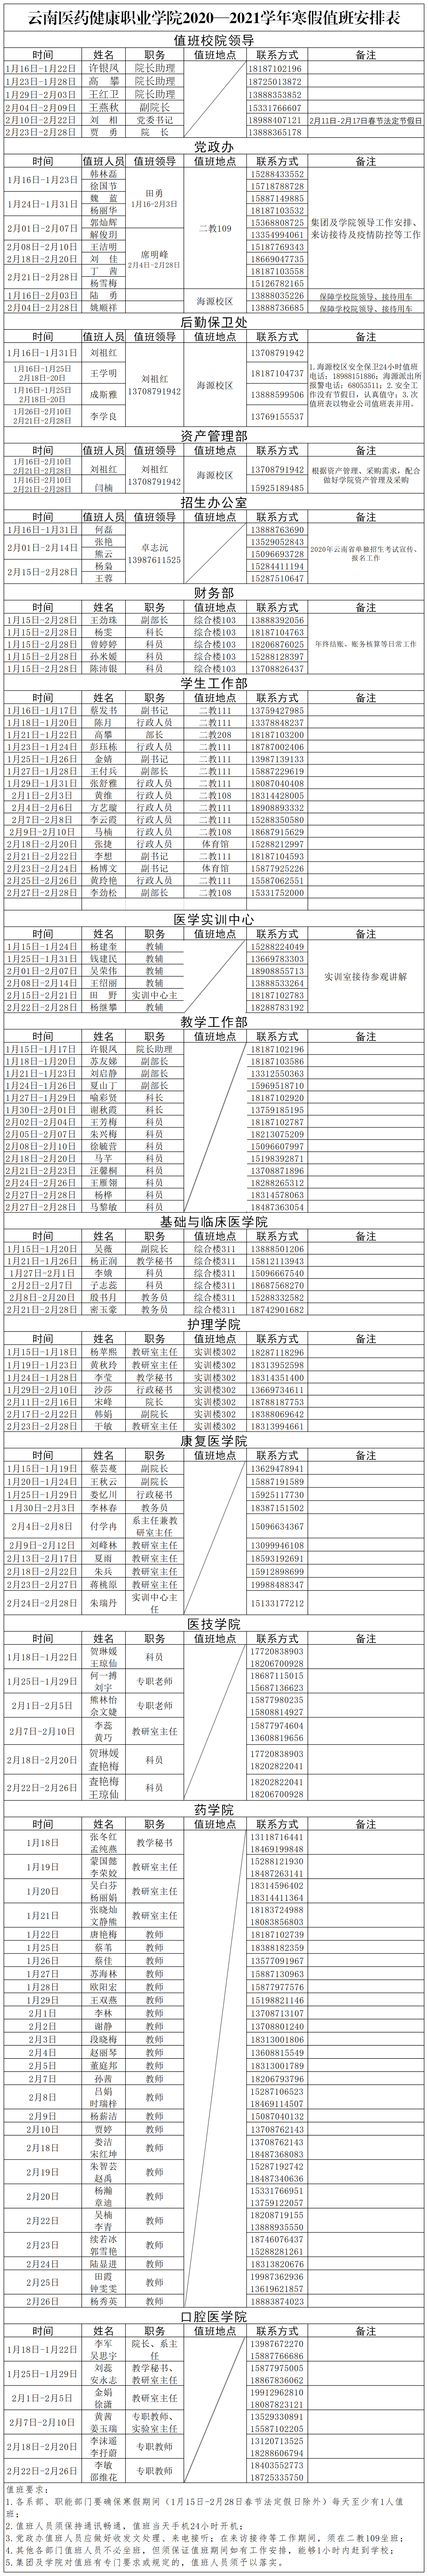 云南医药健康职业学院2020—2021学年寒假值班安排表(1).png